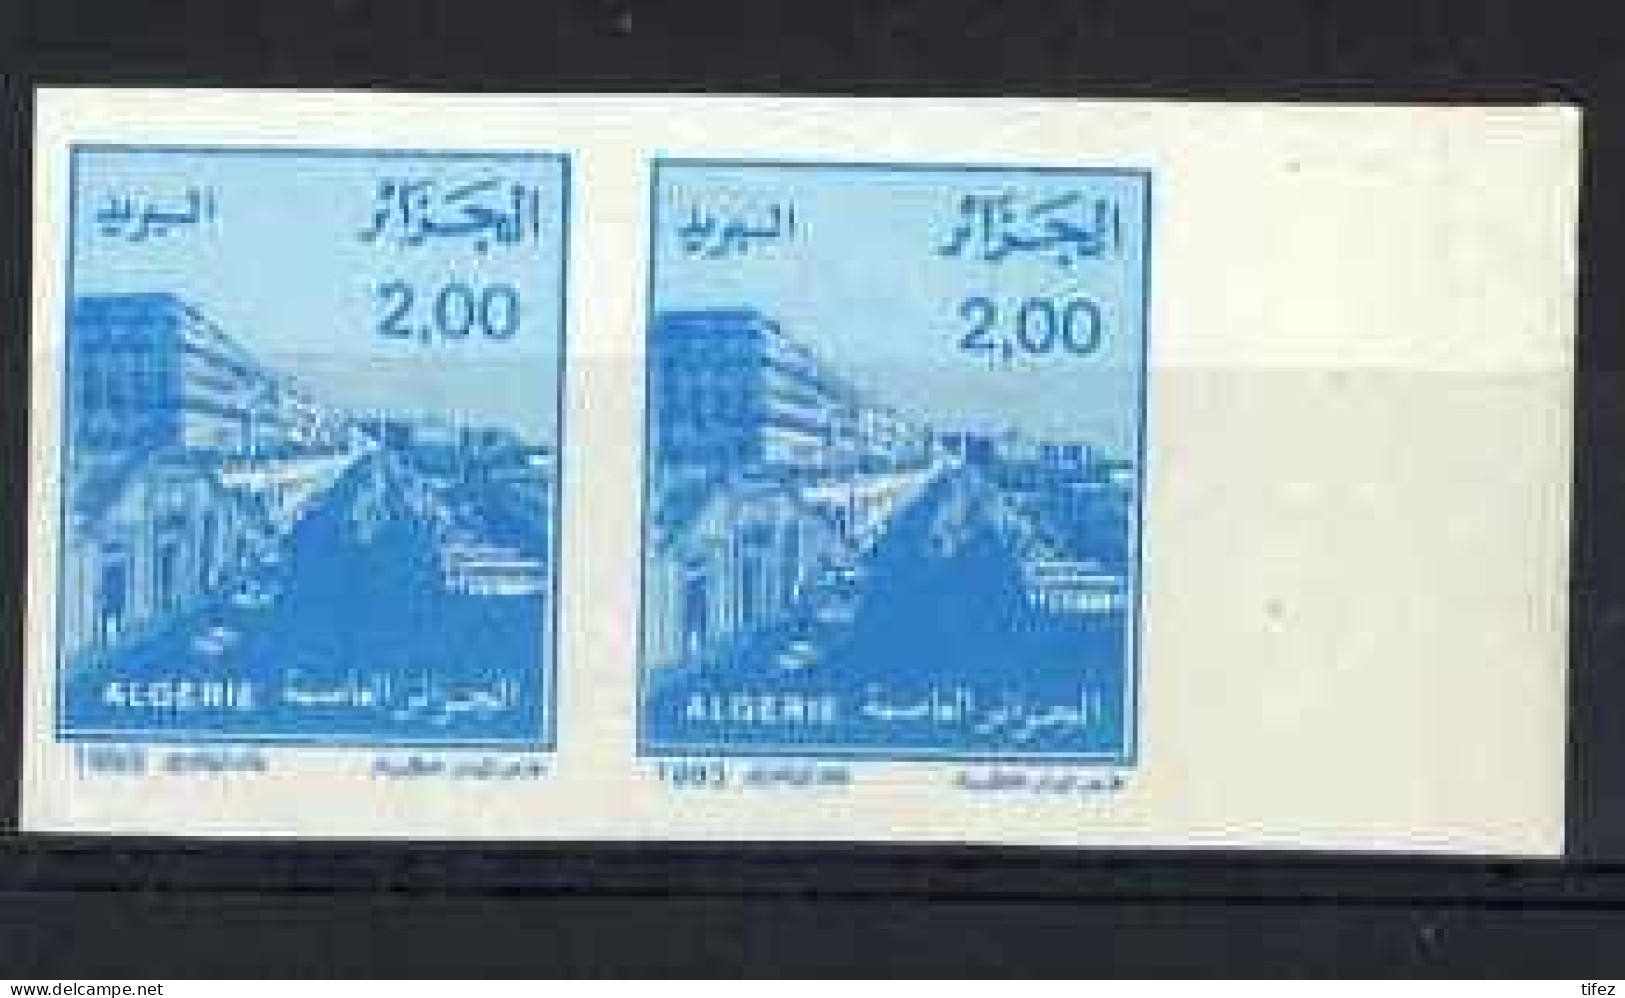 Non-dentelé/Année 1993-N°1049 Neuf**MNH/imperforate : Vue D'Alger (2 D. Bleu) : Paire Horizontale - Algérie (1962-...)